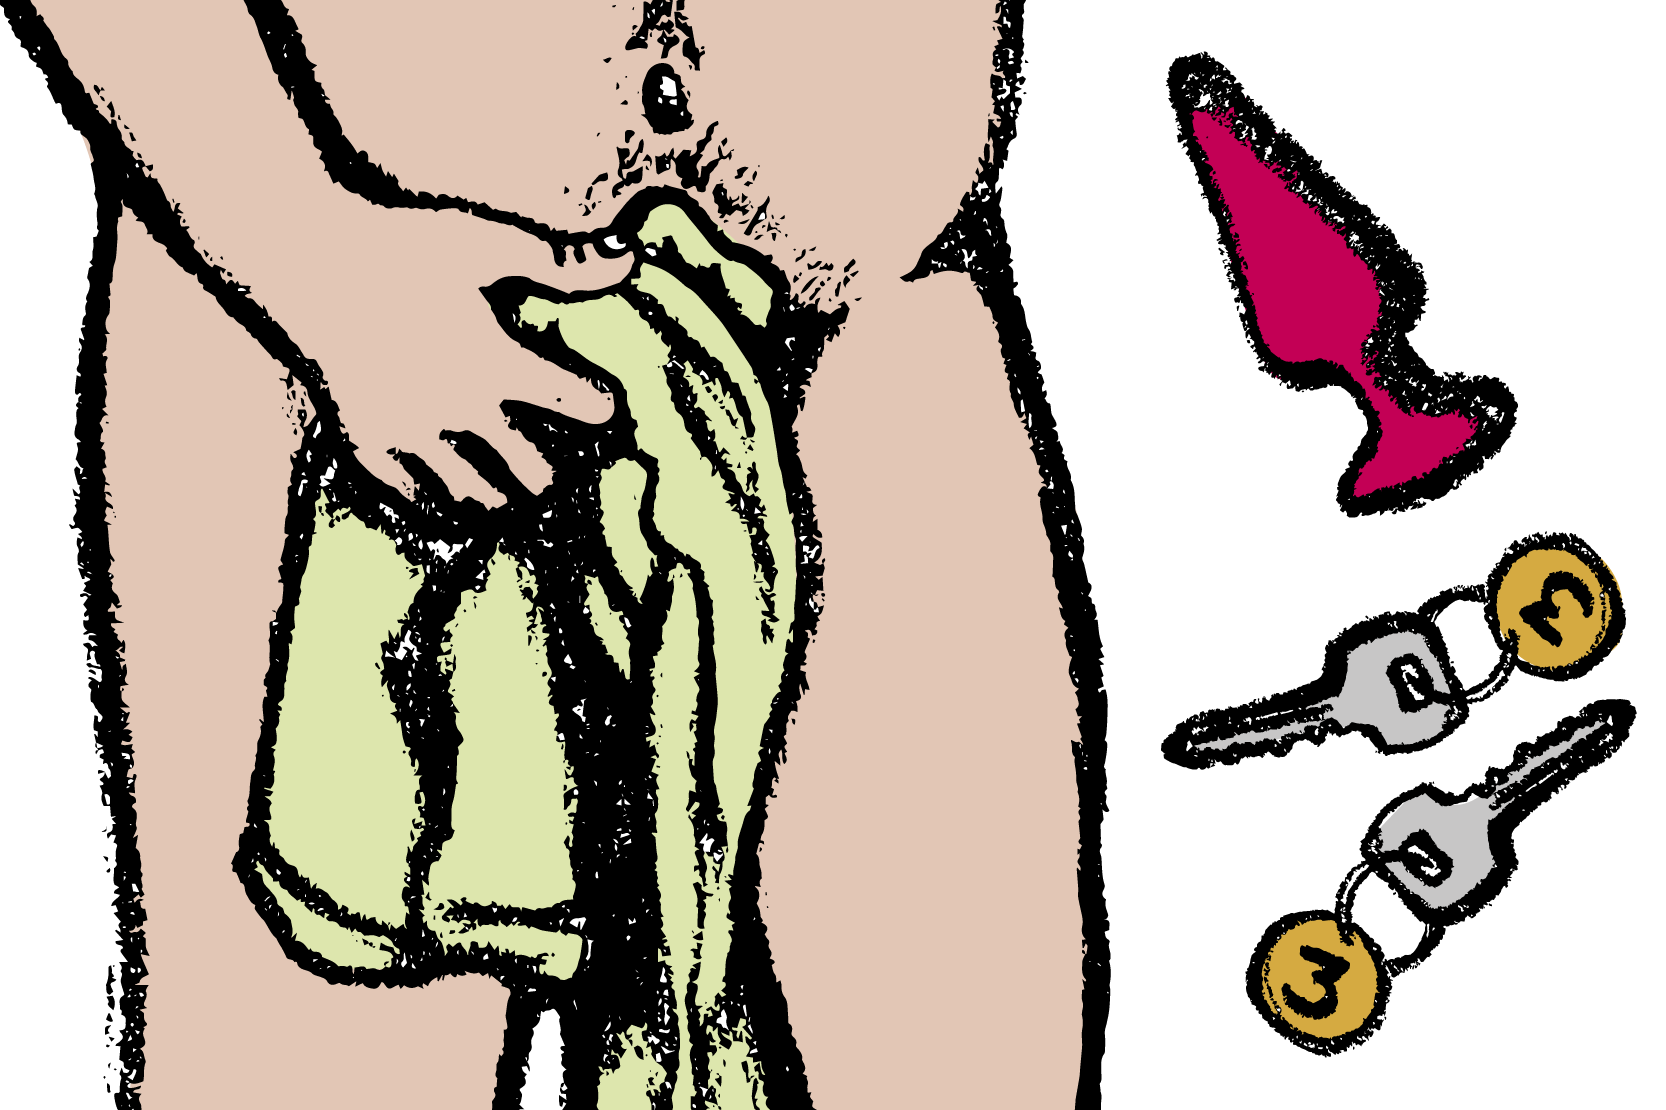 En naken person som täcker könet. Hotellnycklar och en but plug. Illustration.